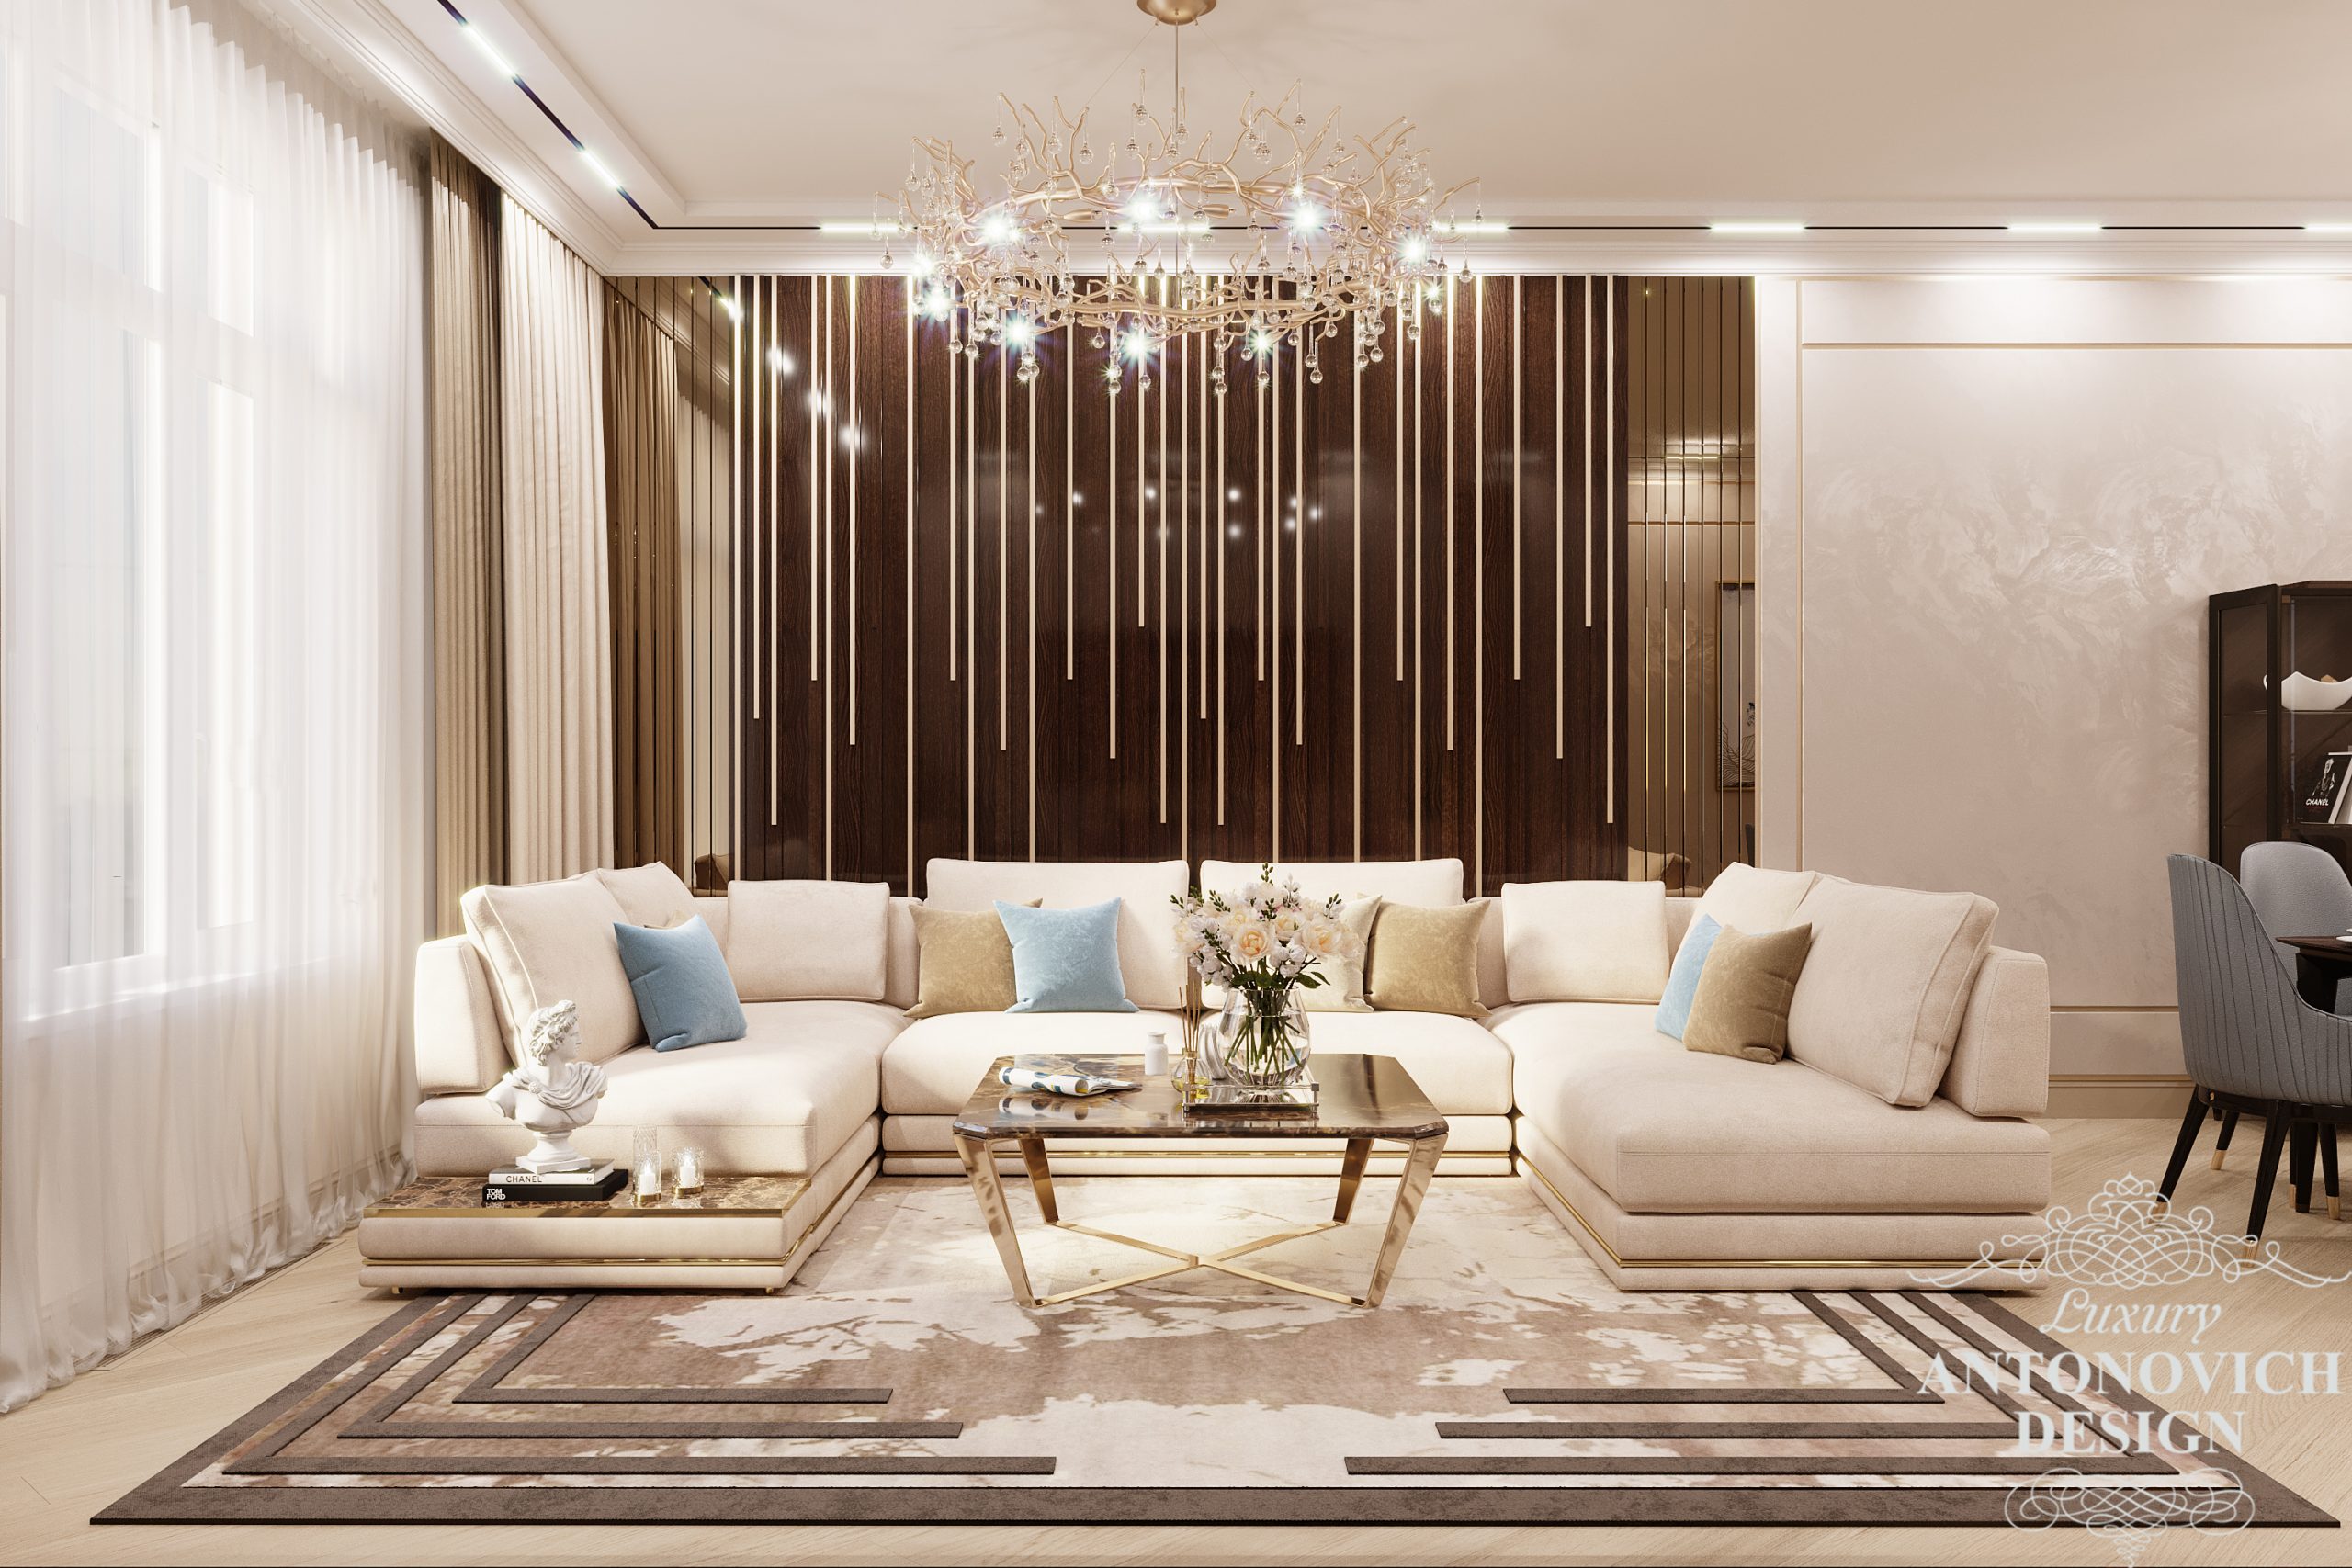 Авторский дизайн квартиры с декором из лакированного шпона и латуни в интерьере гостиной